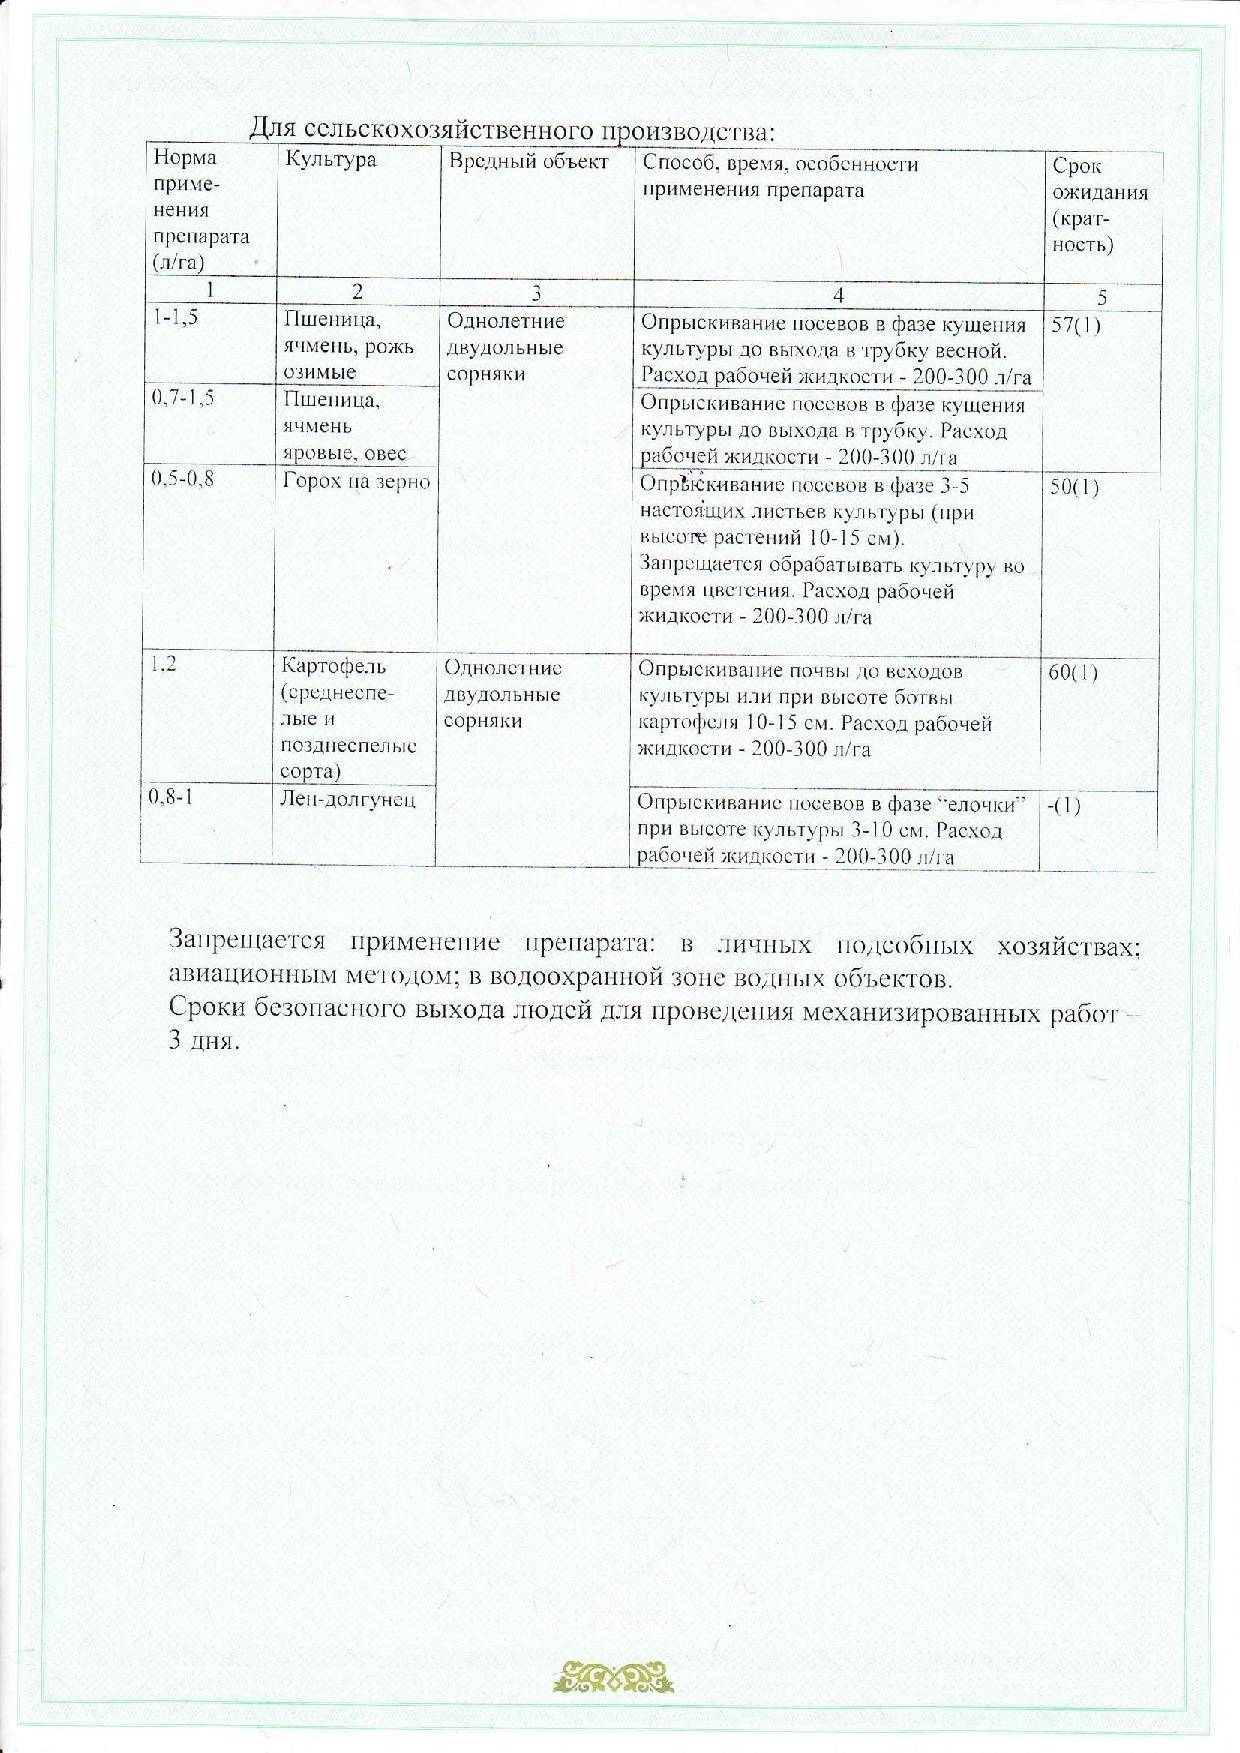 Инструкция по применению и механизм действия гербицида тифи, нормы расхода